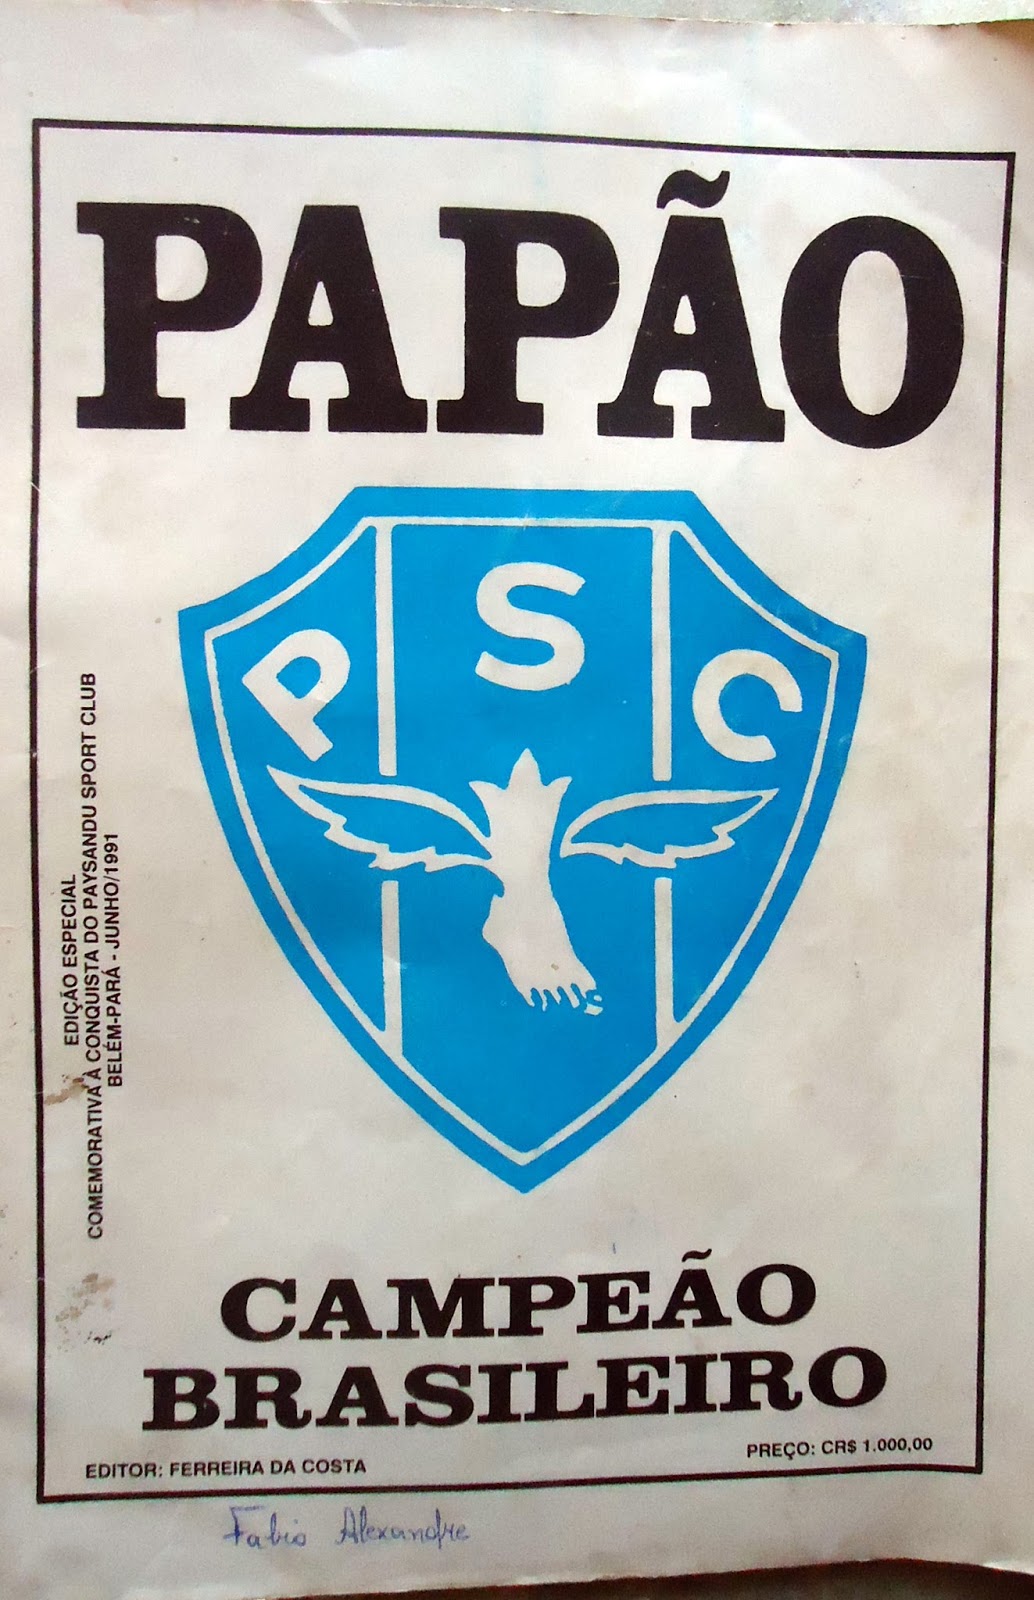 Paysandu Sport Club :: O Maior Campeão da Amazônia